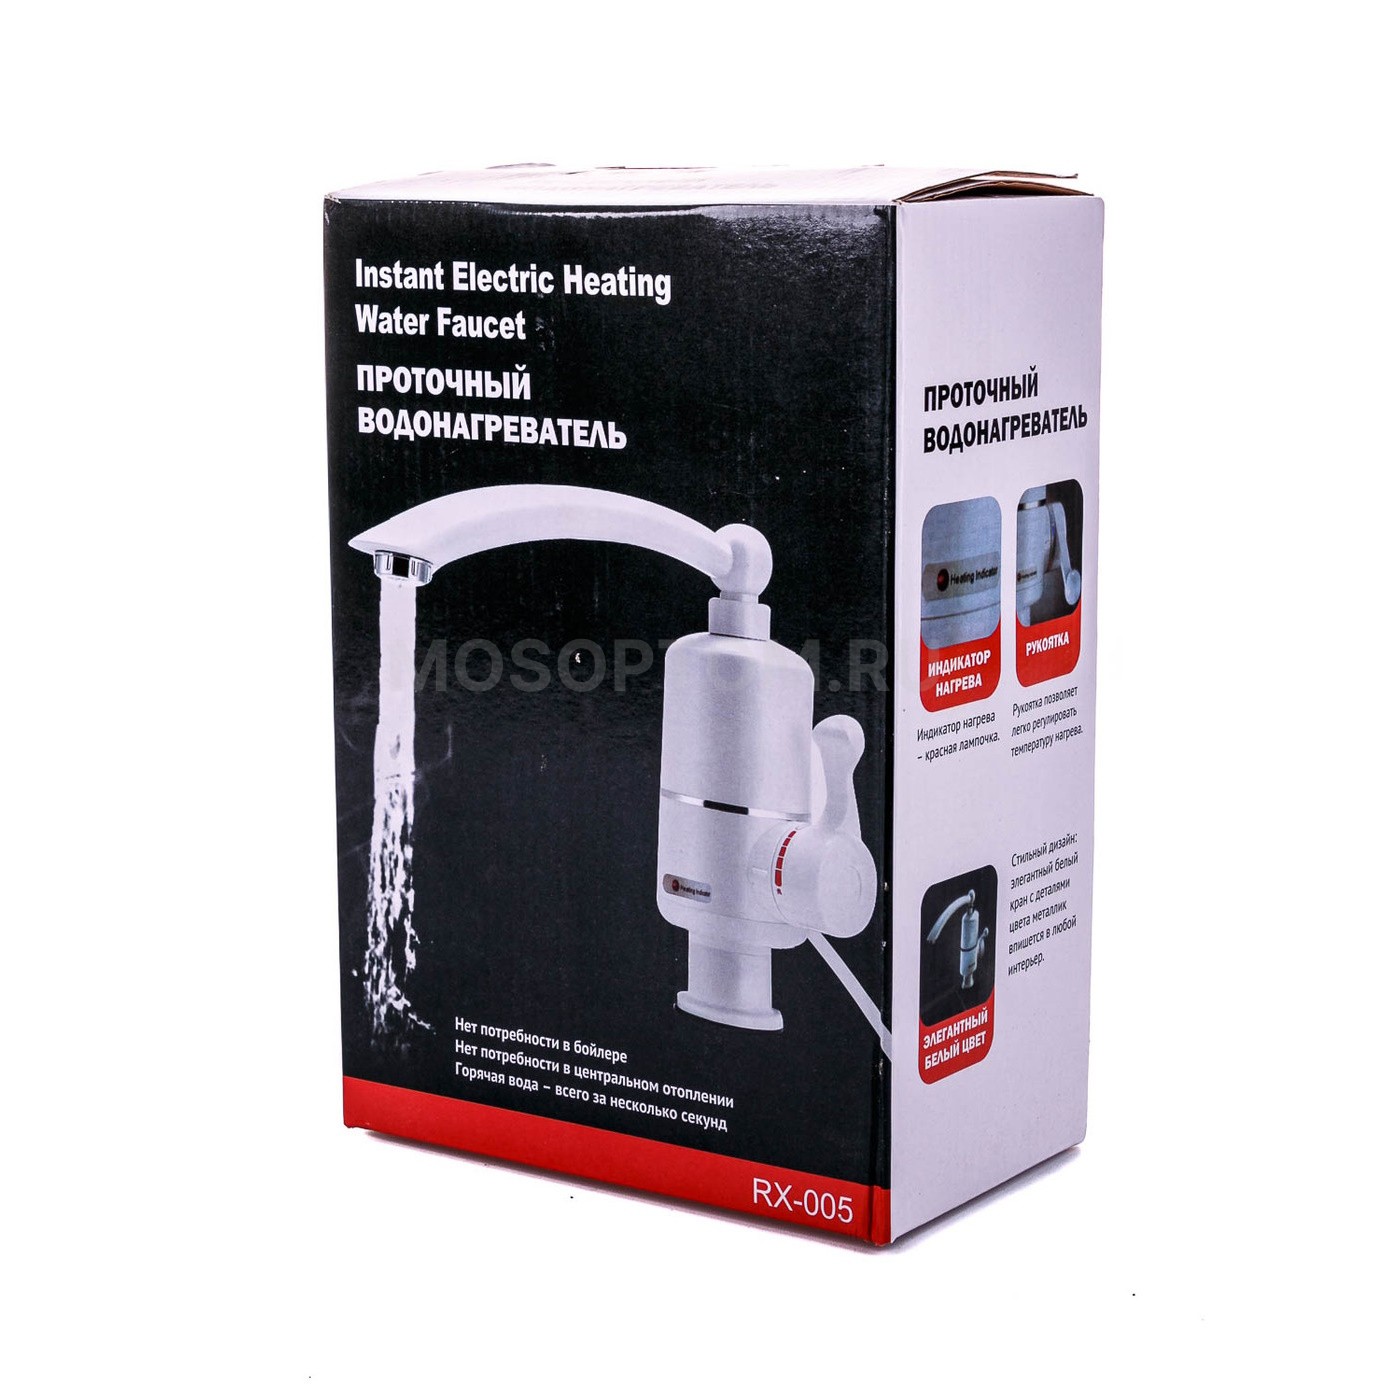 Проточный водонагреватель Instant Electric Heating Water Faucet RX-005 оптом